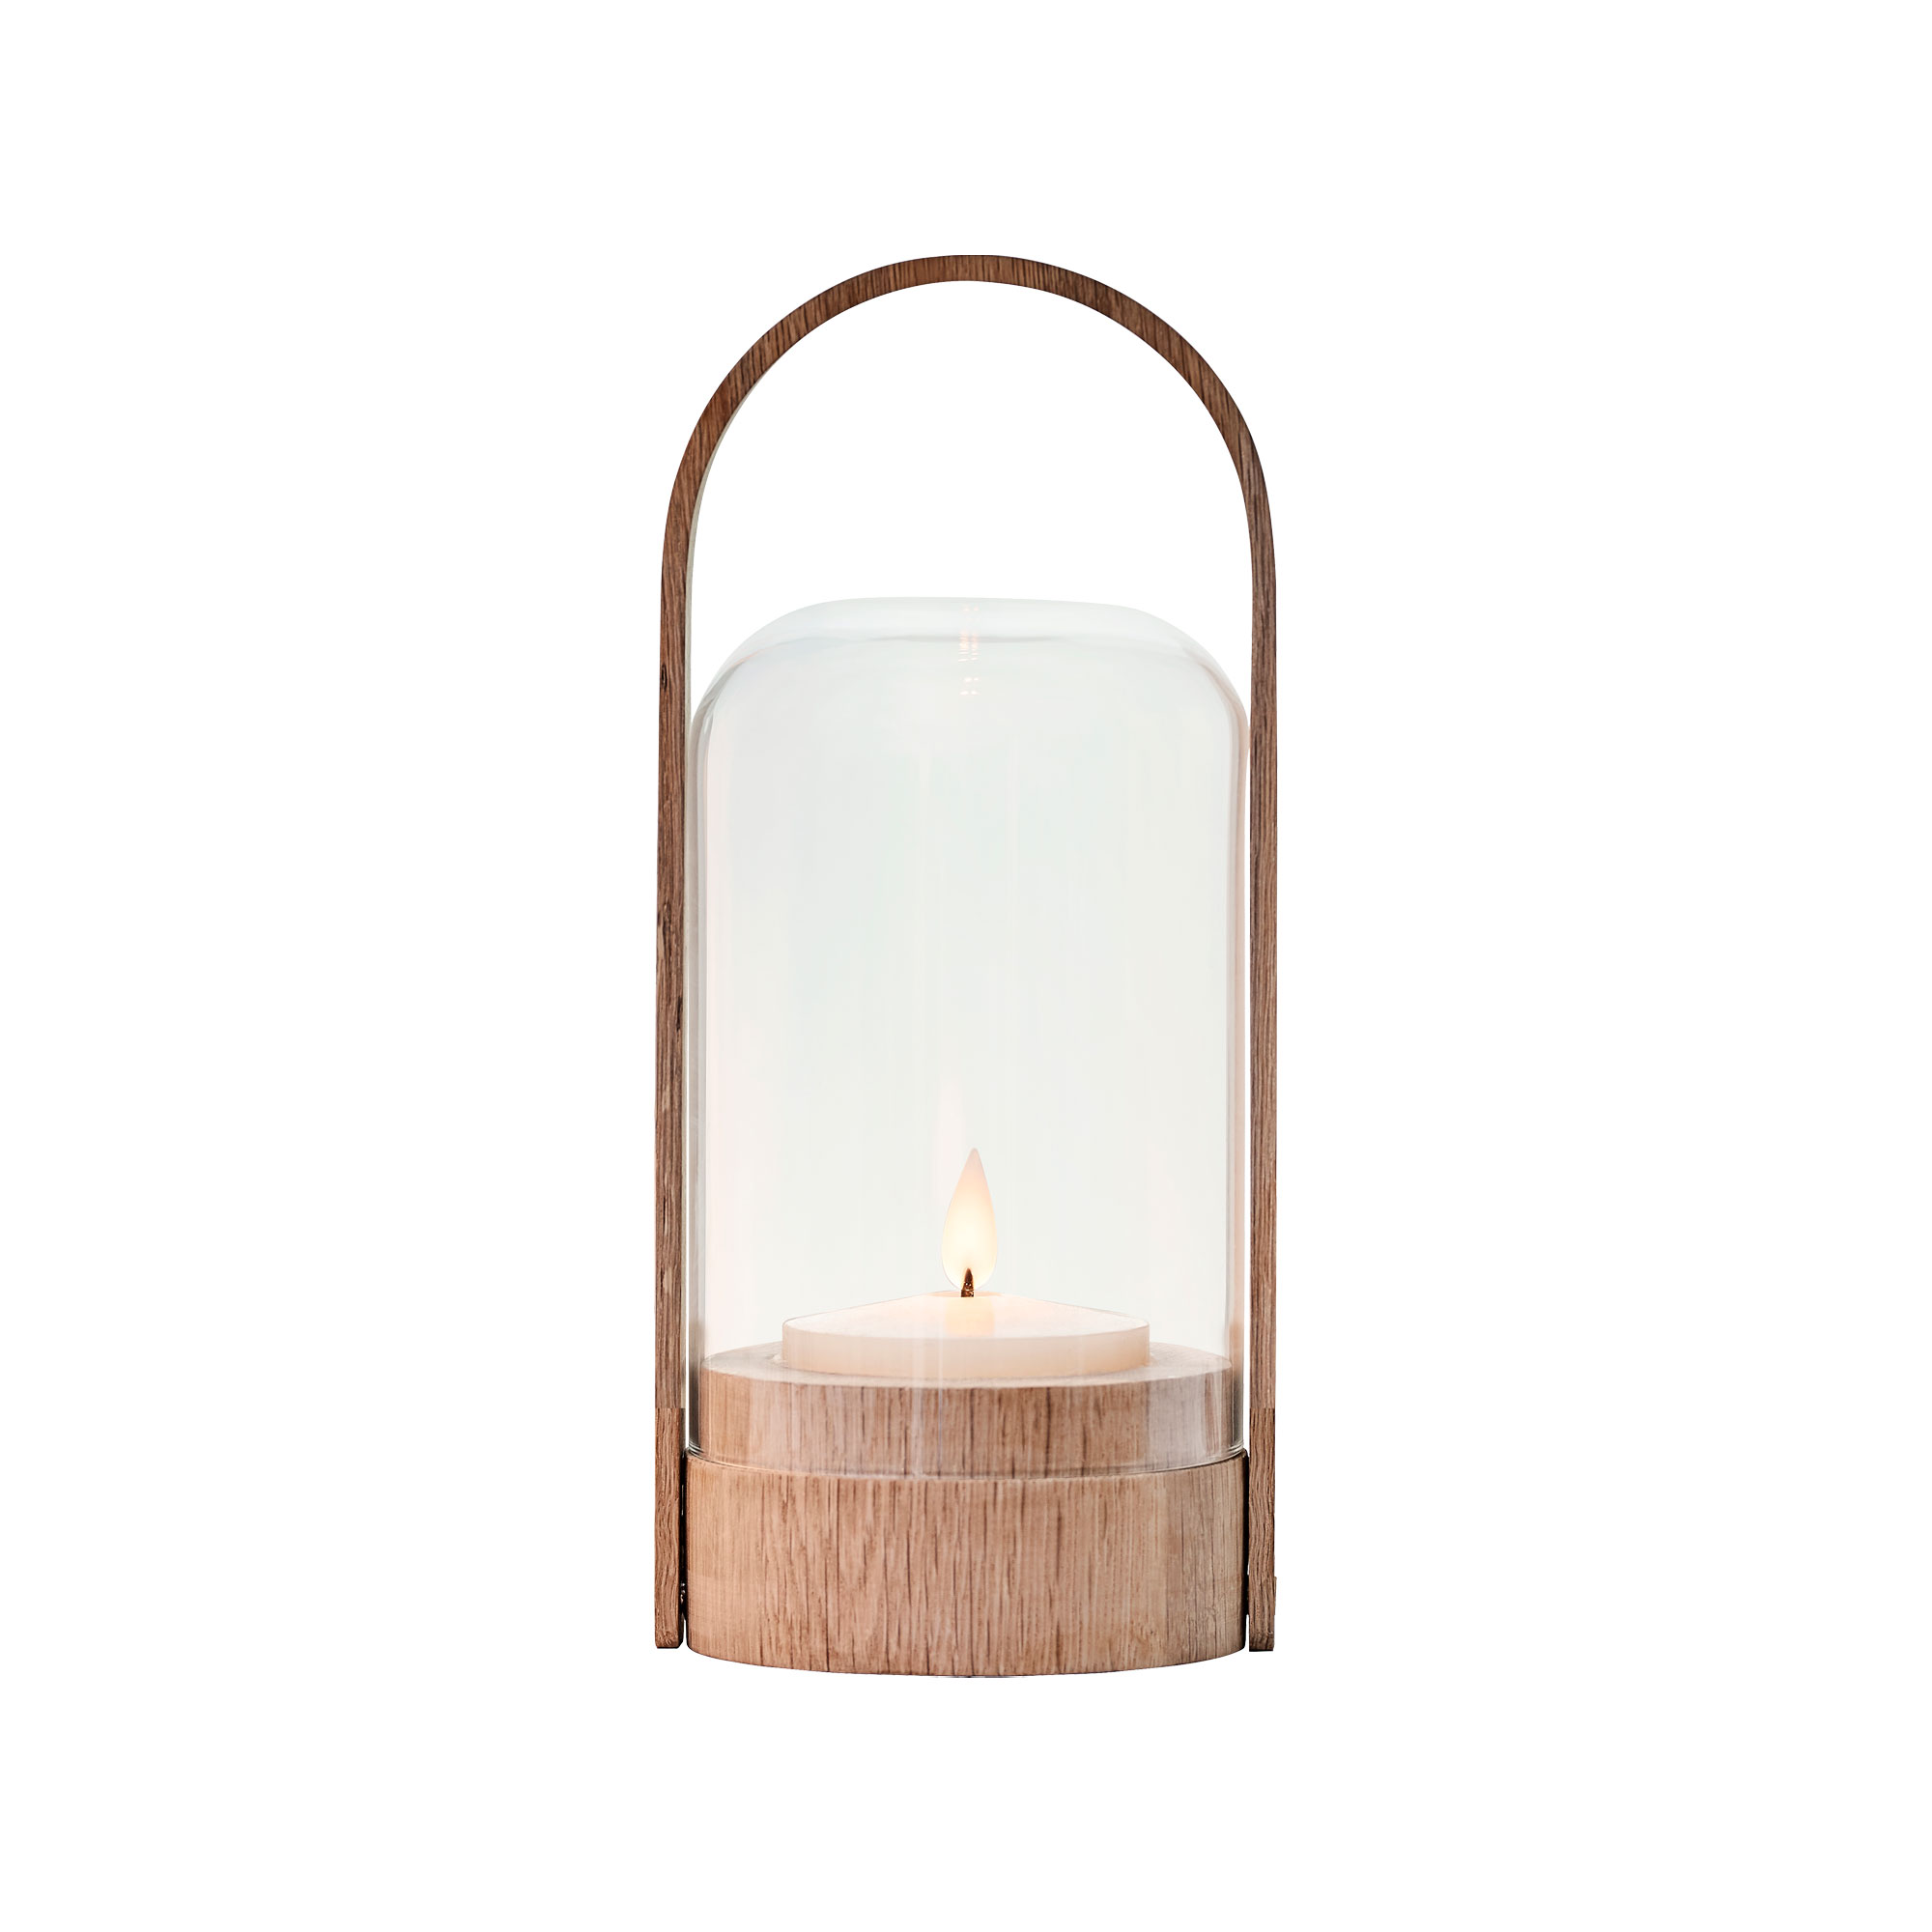 Le klint - Candlelight table lamp, oak